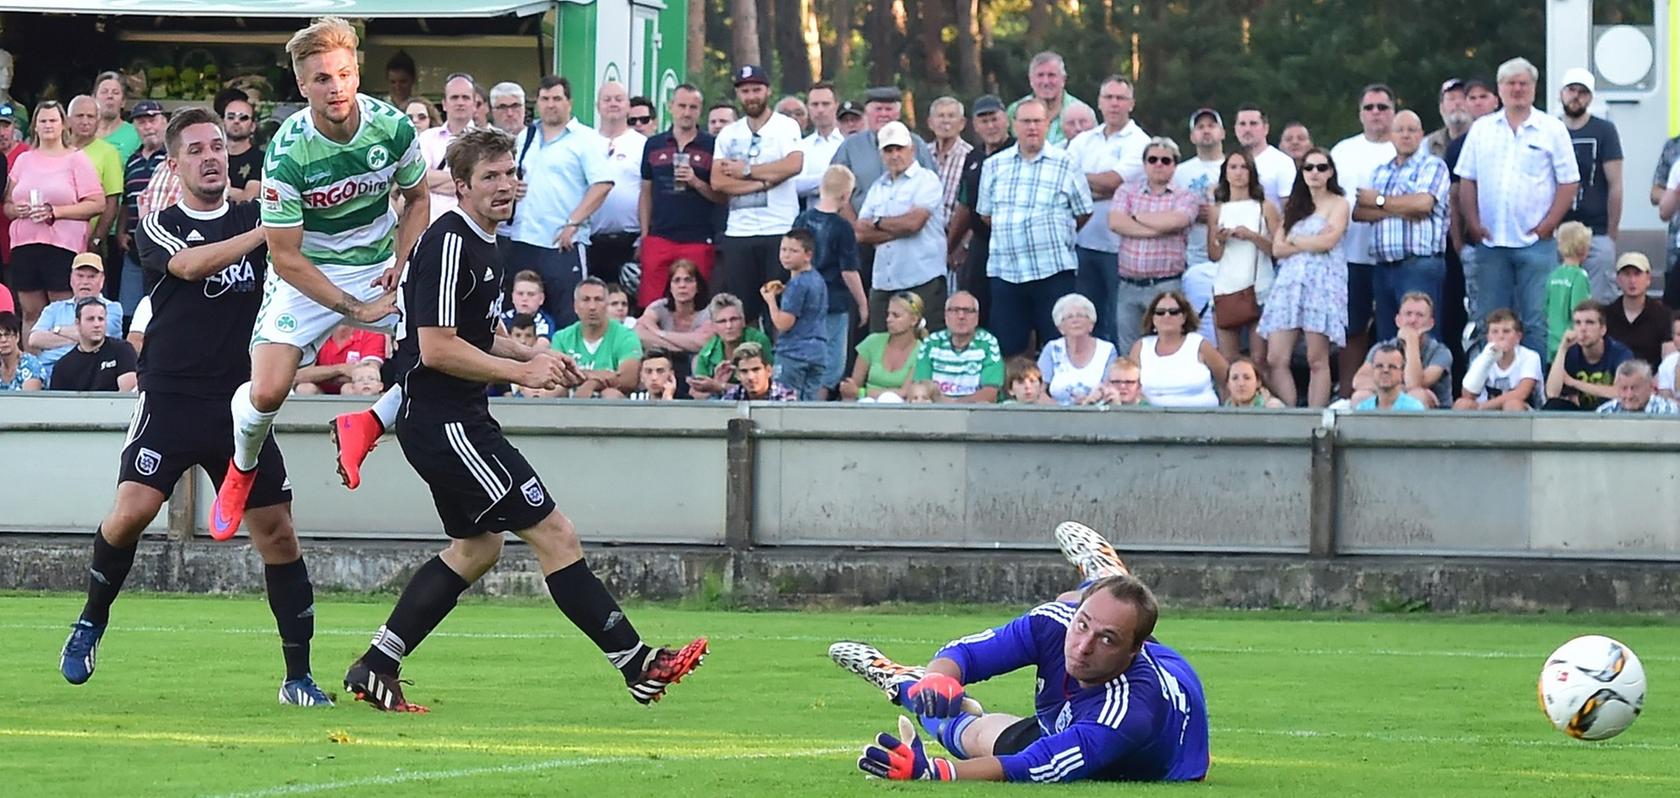 Da blieb Maximilan Erk im Tor des FSV Stadeln nur das Nachsehen. Beim Treffer von Florian Trinks hatte er keine Abwehrmöglichkeit.